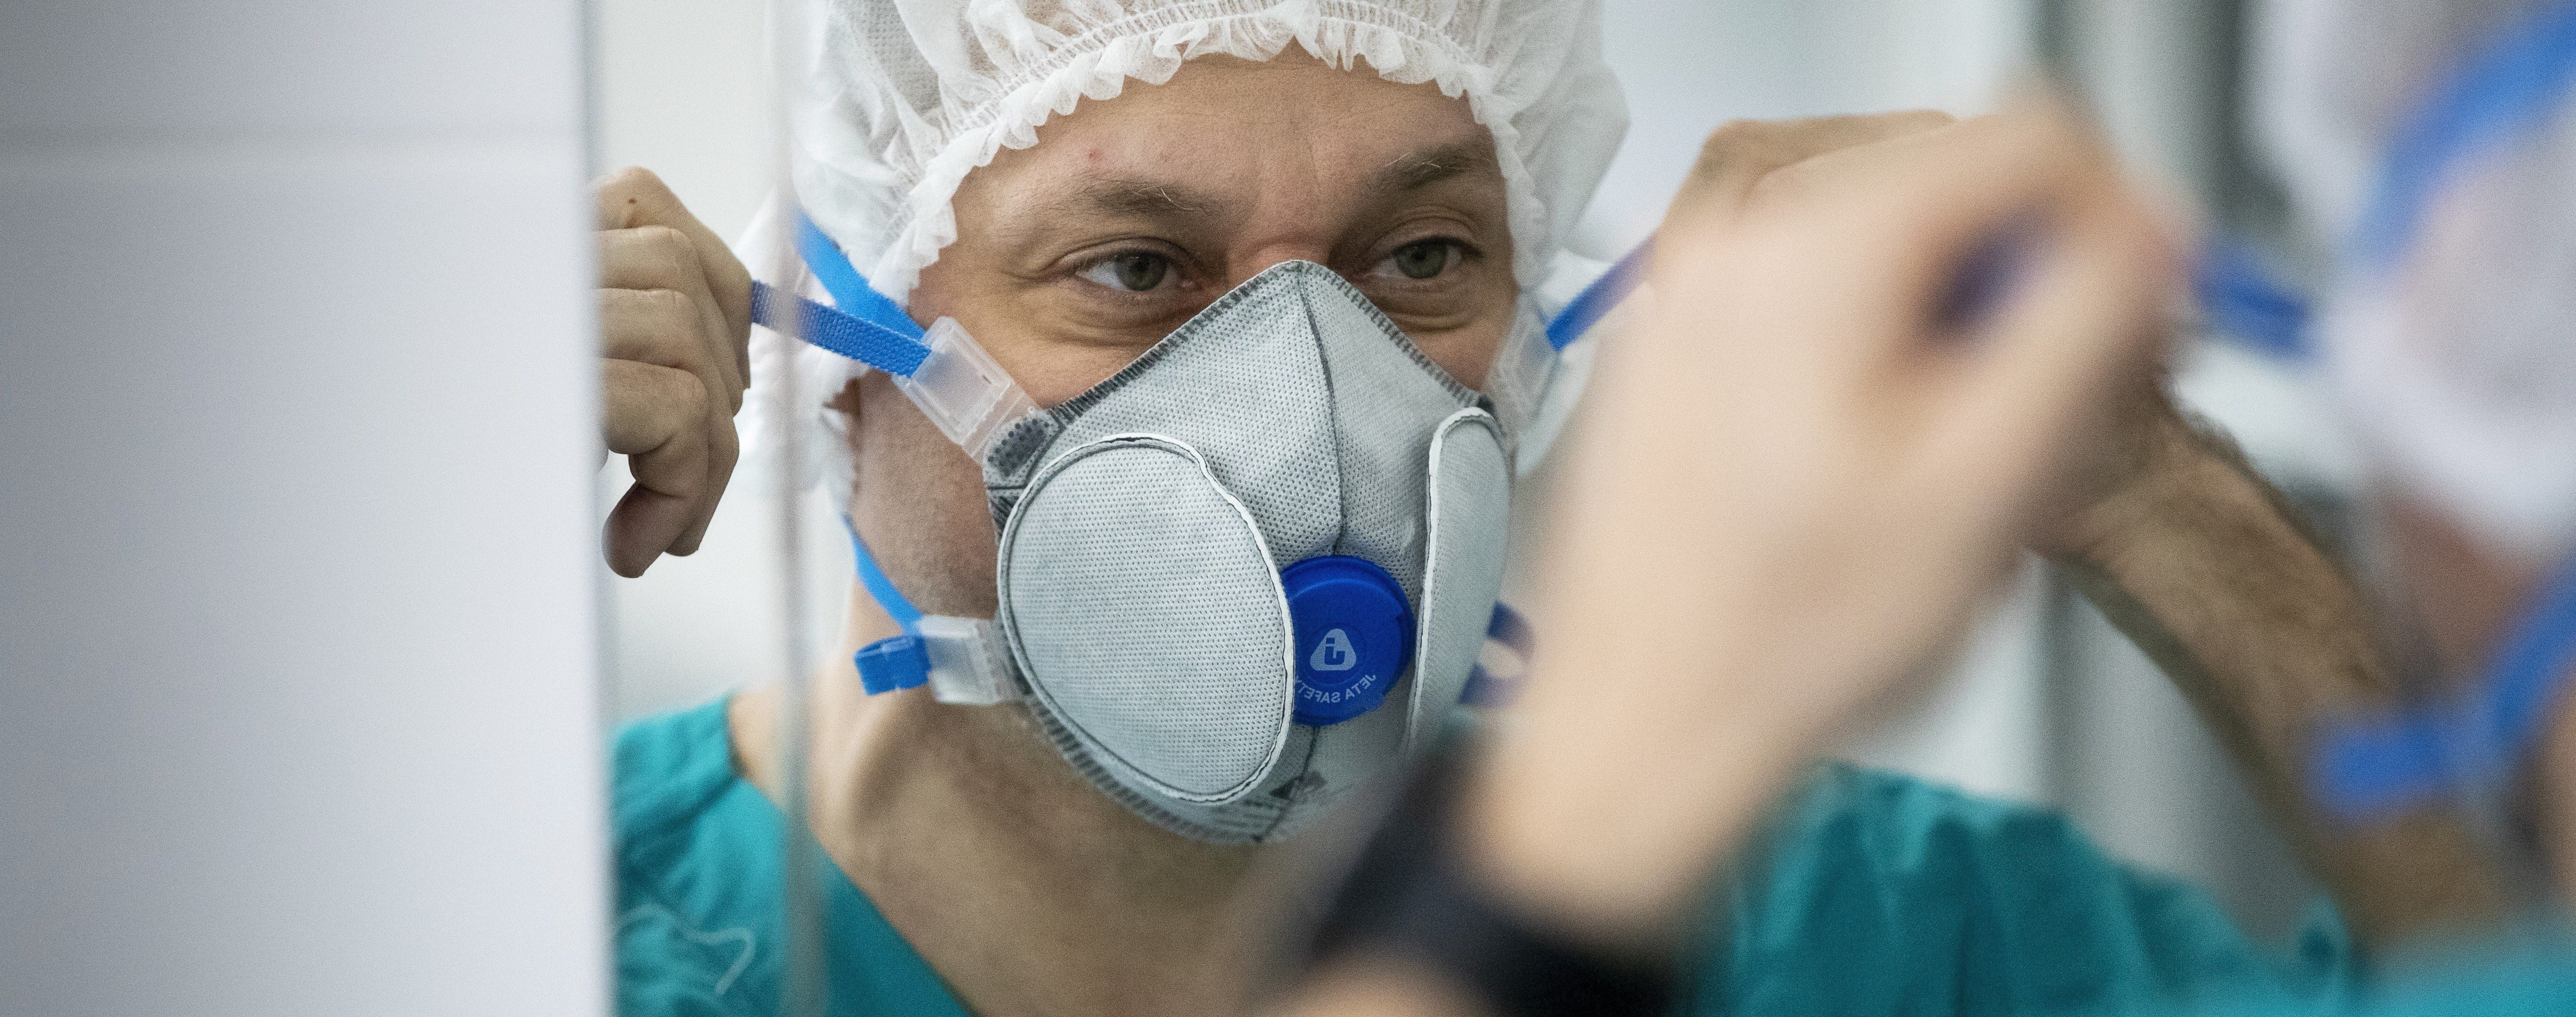 В Одесской области в гериатрическом интернате зафиксировали вспышку коронавируса